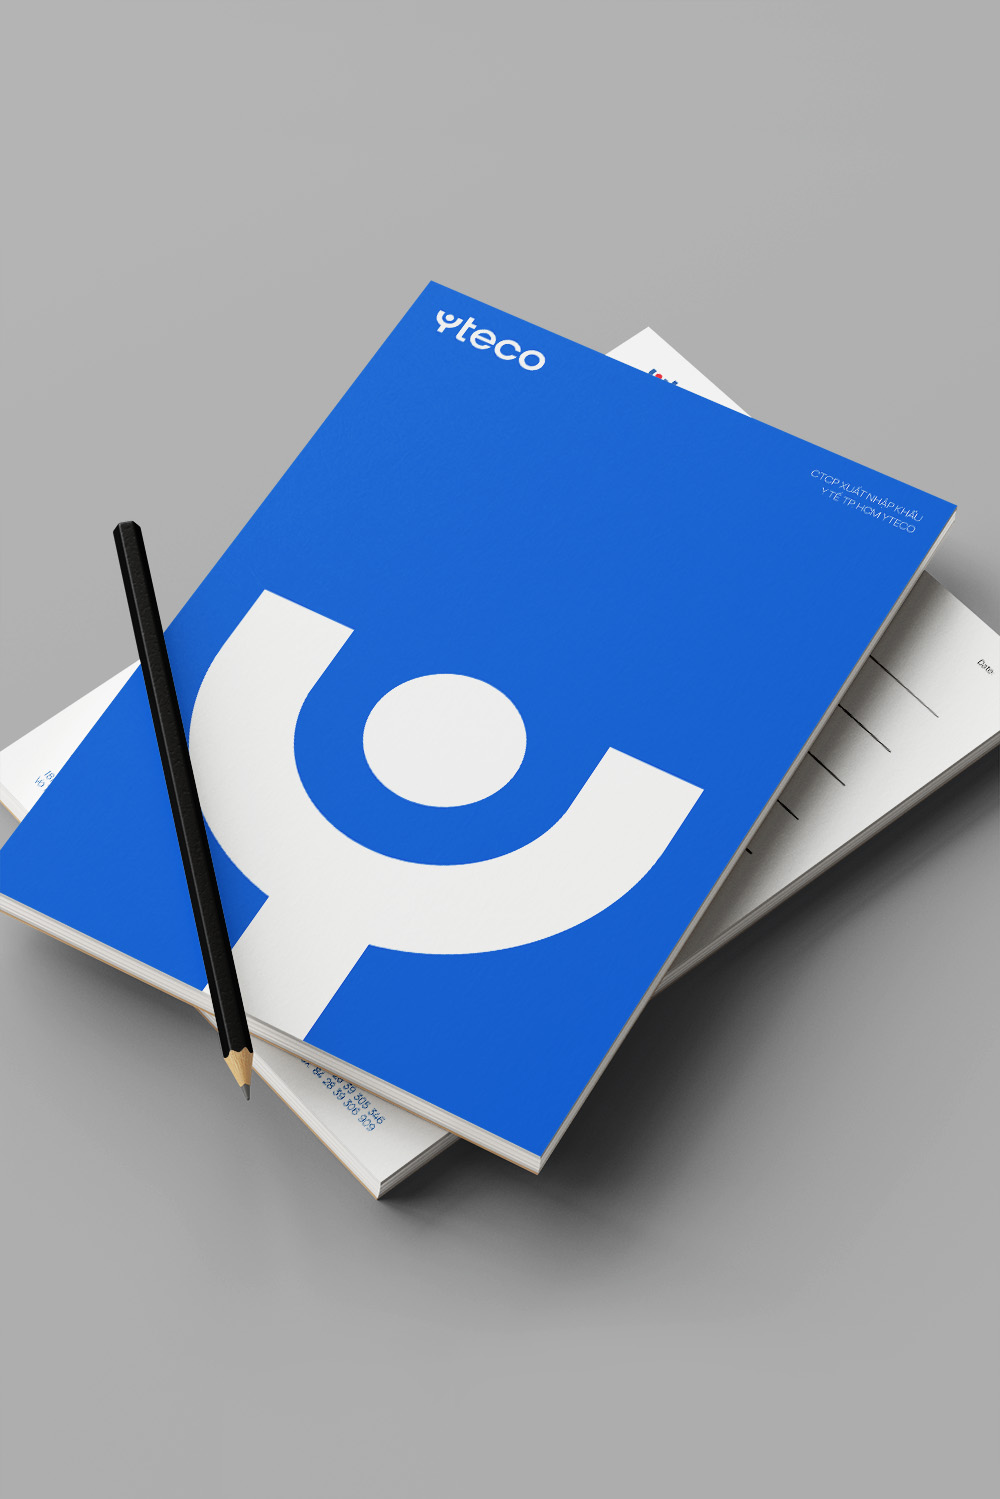 YTECO notepad designed mockup